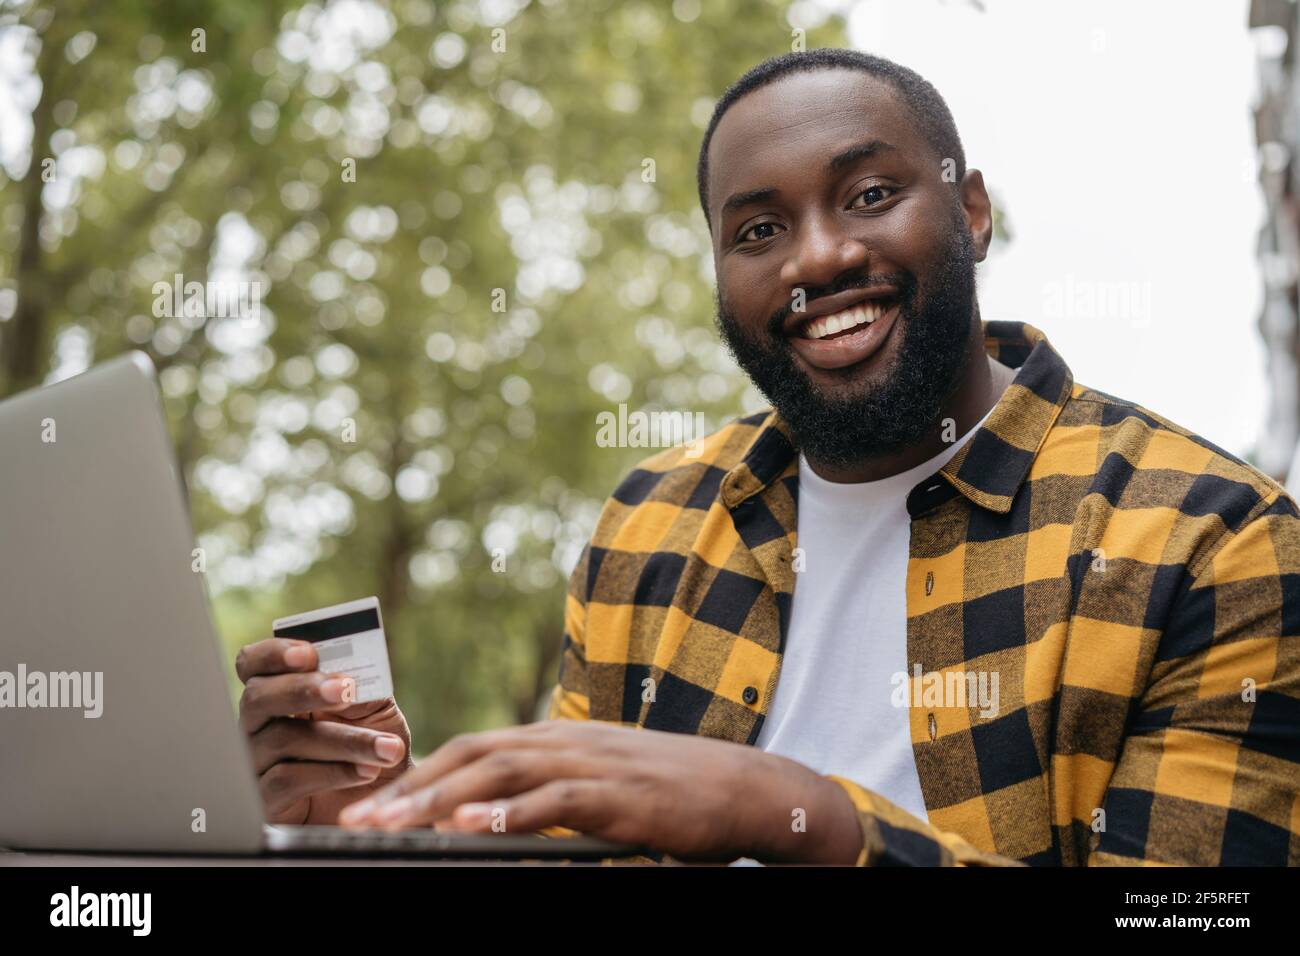 Portrait d'un jeune homme afro-américain souriant tenant une carte de crédit, magasiner en ligne. Concept du Vendredi fou. Bonne réussite freelance recevoir le paiement Banque D'Images